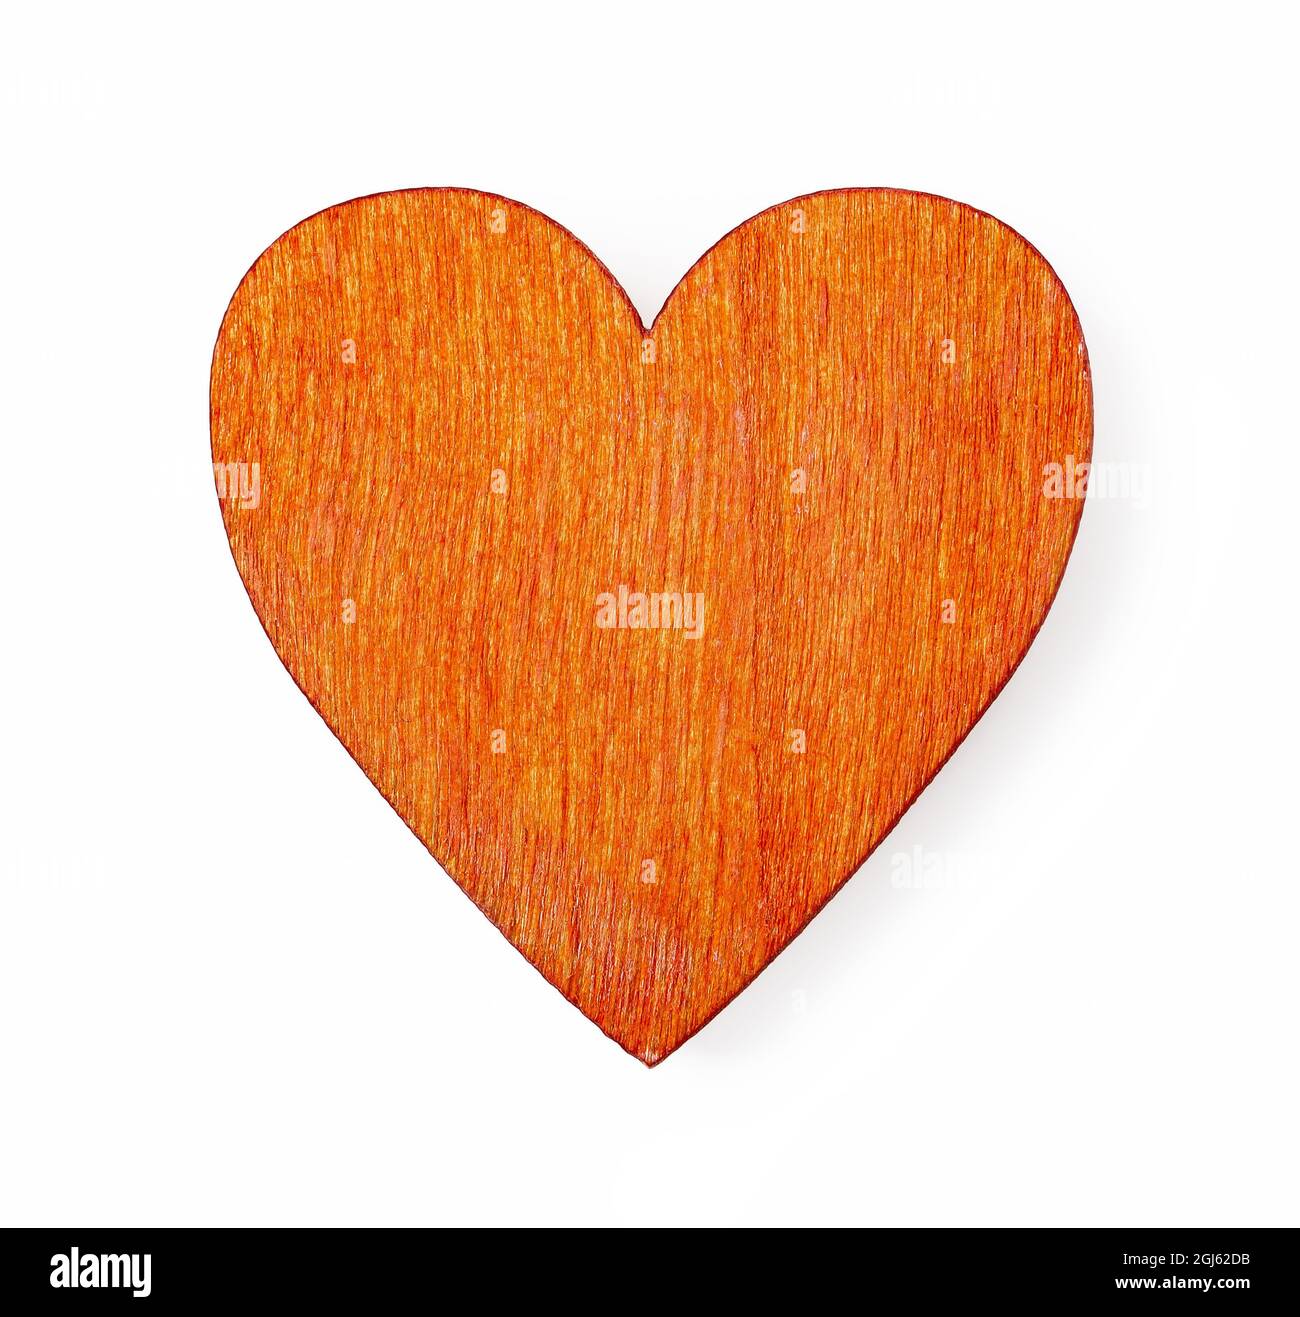 Ein valentinsherz aus Holz mit orangefarbener Farbe, isoliert auf Weiß. Lebendes grünes Symbol der Liebe, Valentinstag, Leidenschaft und Zärtlichkeit für Grußkarte. Stockfoto